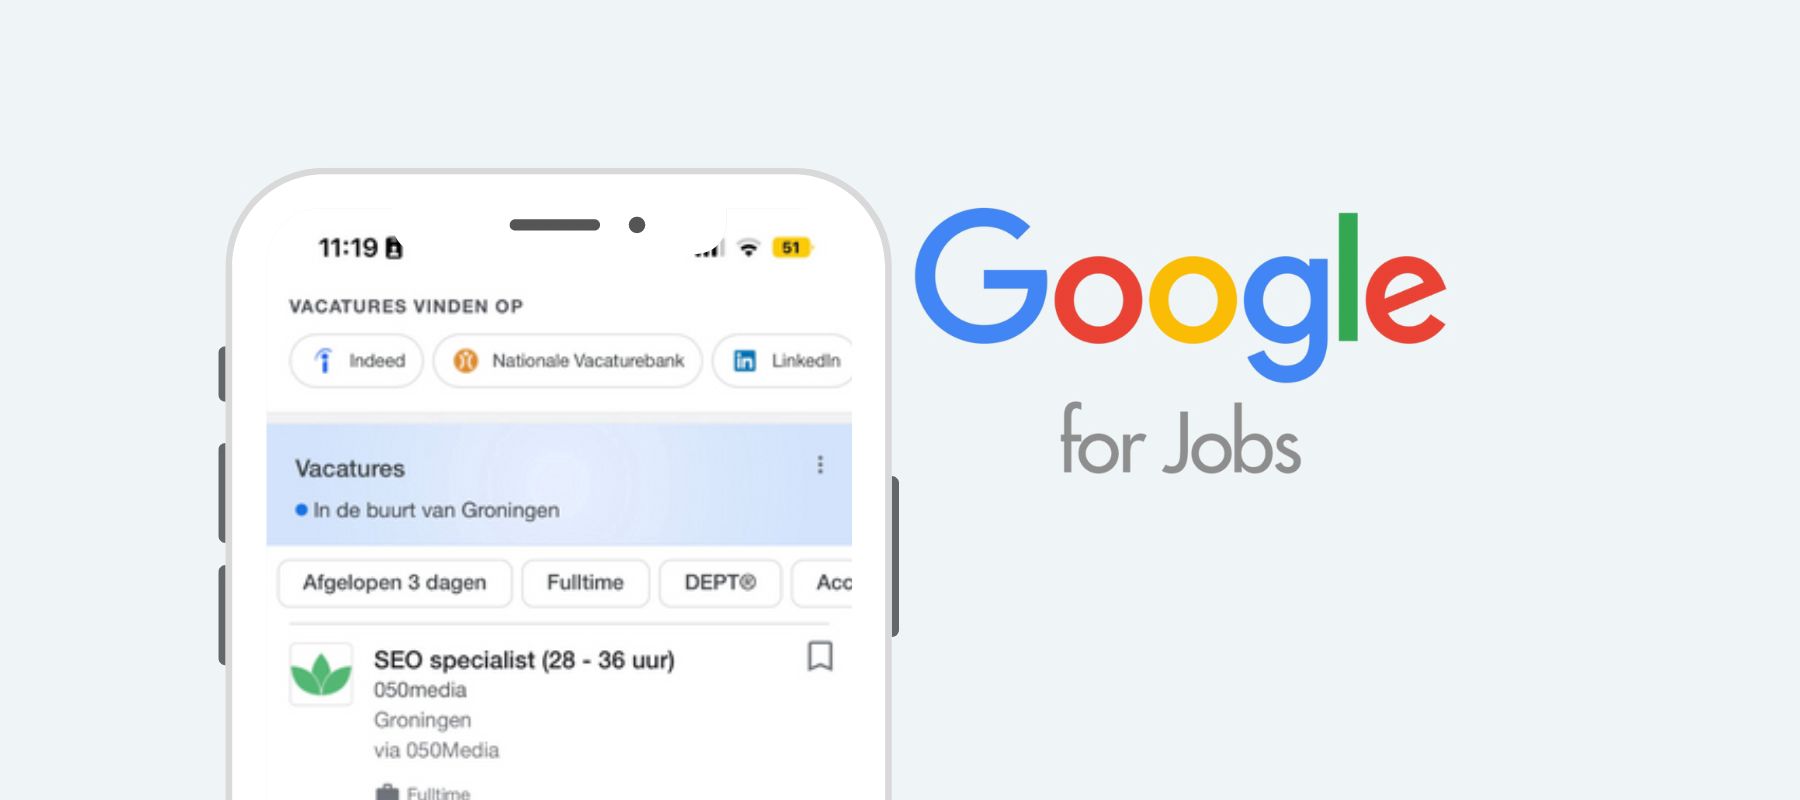 Google for Jobs.jpg